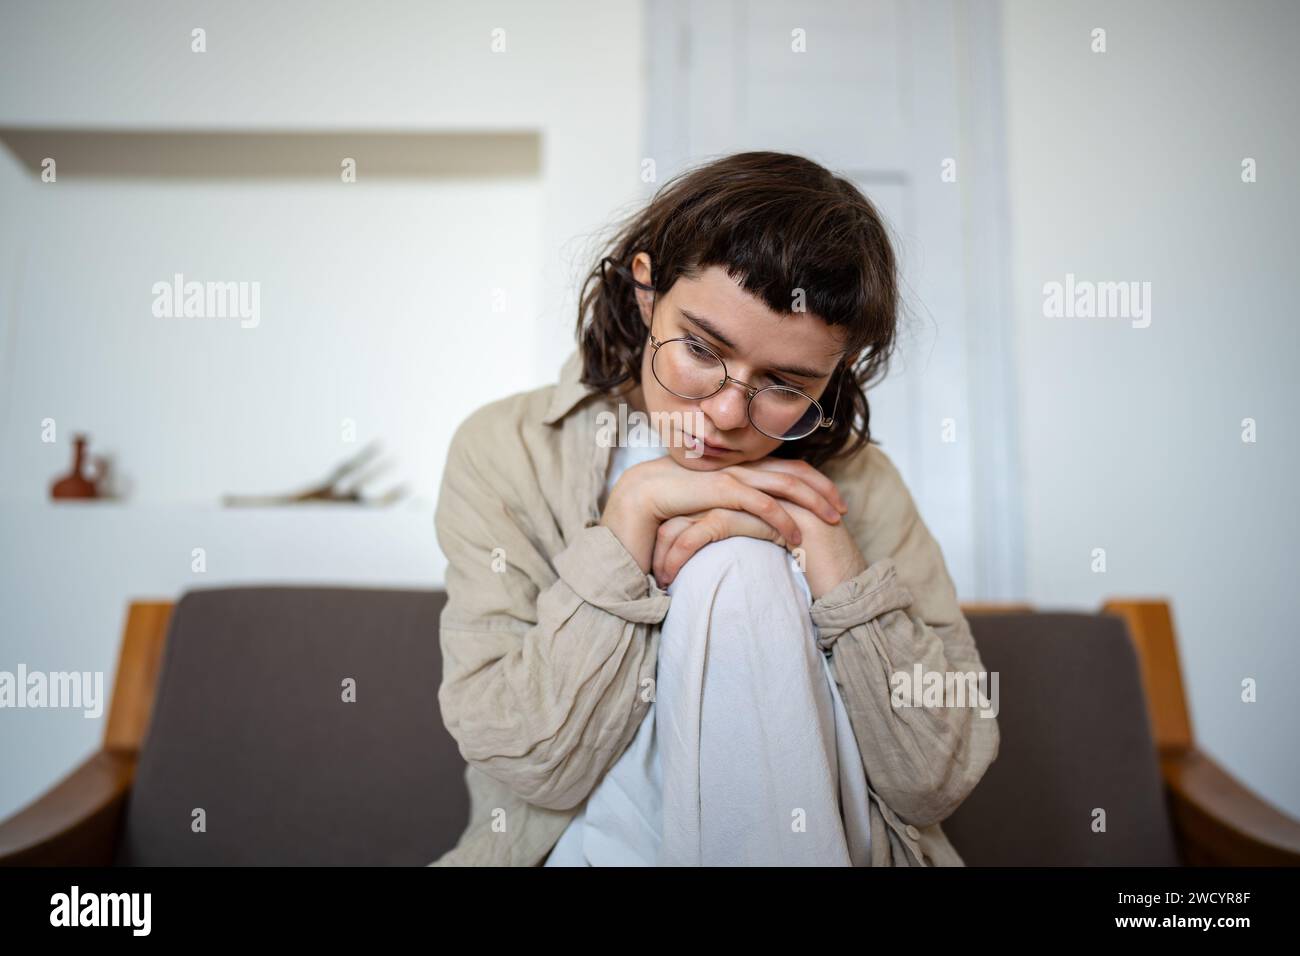 Déprimé fatigué solitaire adolescente désespérée tristement assise sur le canapé à la maison sentant chagrin, solitude Banque D'Images